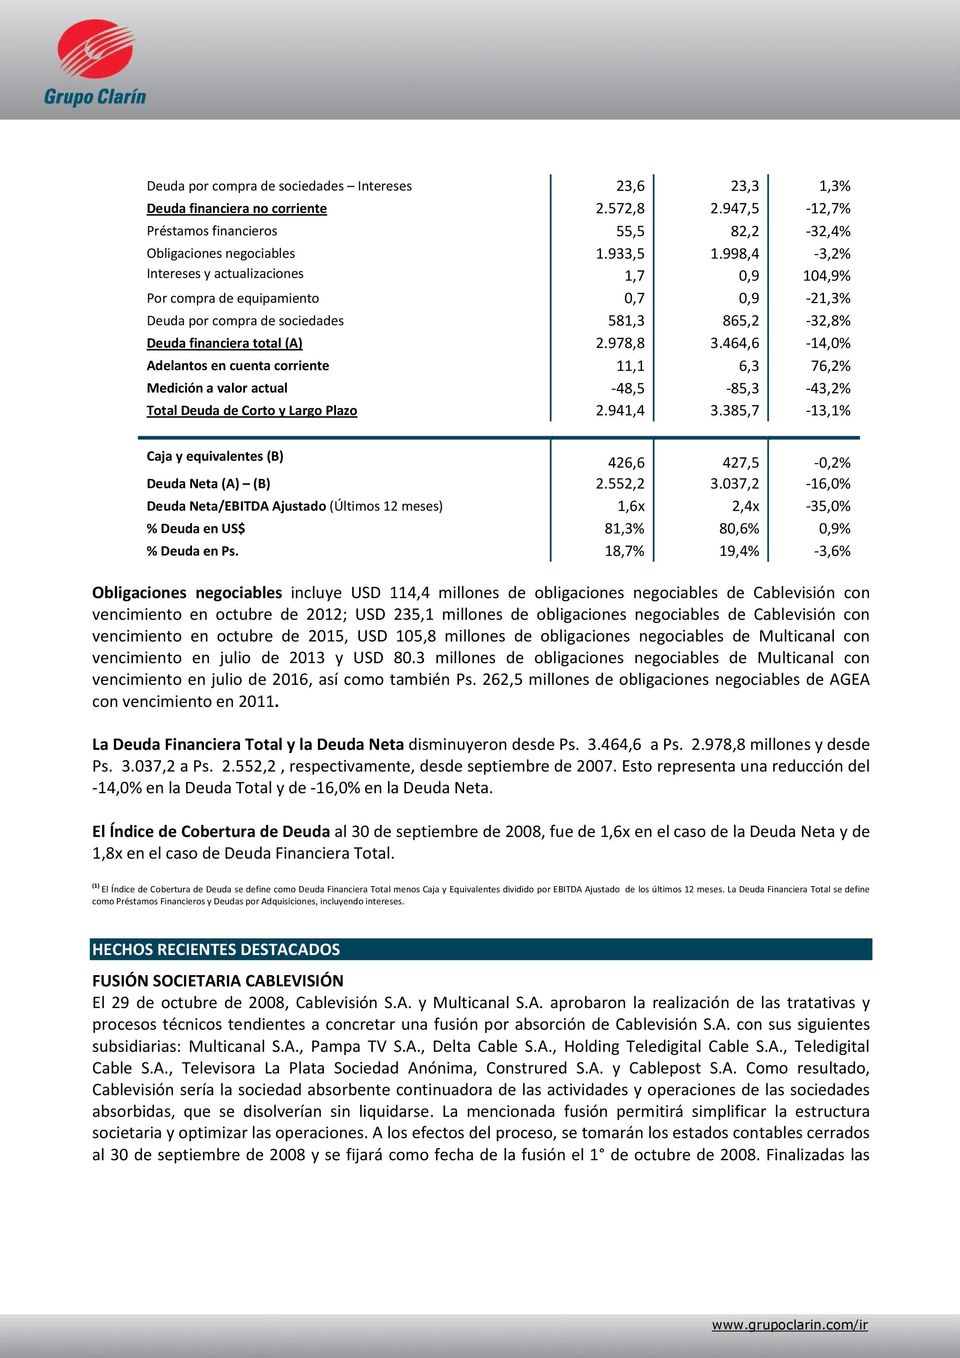 464,6-14,0% Adelantos en cuenta corriente 11,1 6,3 76,2% Medición a valor actual -48,5-85,3-43,2% Total Deuda de Corto y Largo Plazo 2.941,4 3.